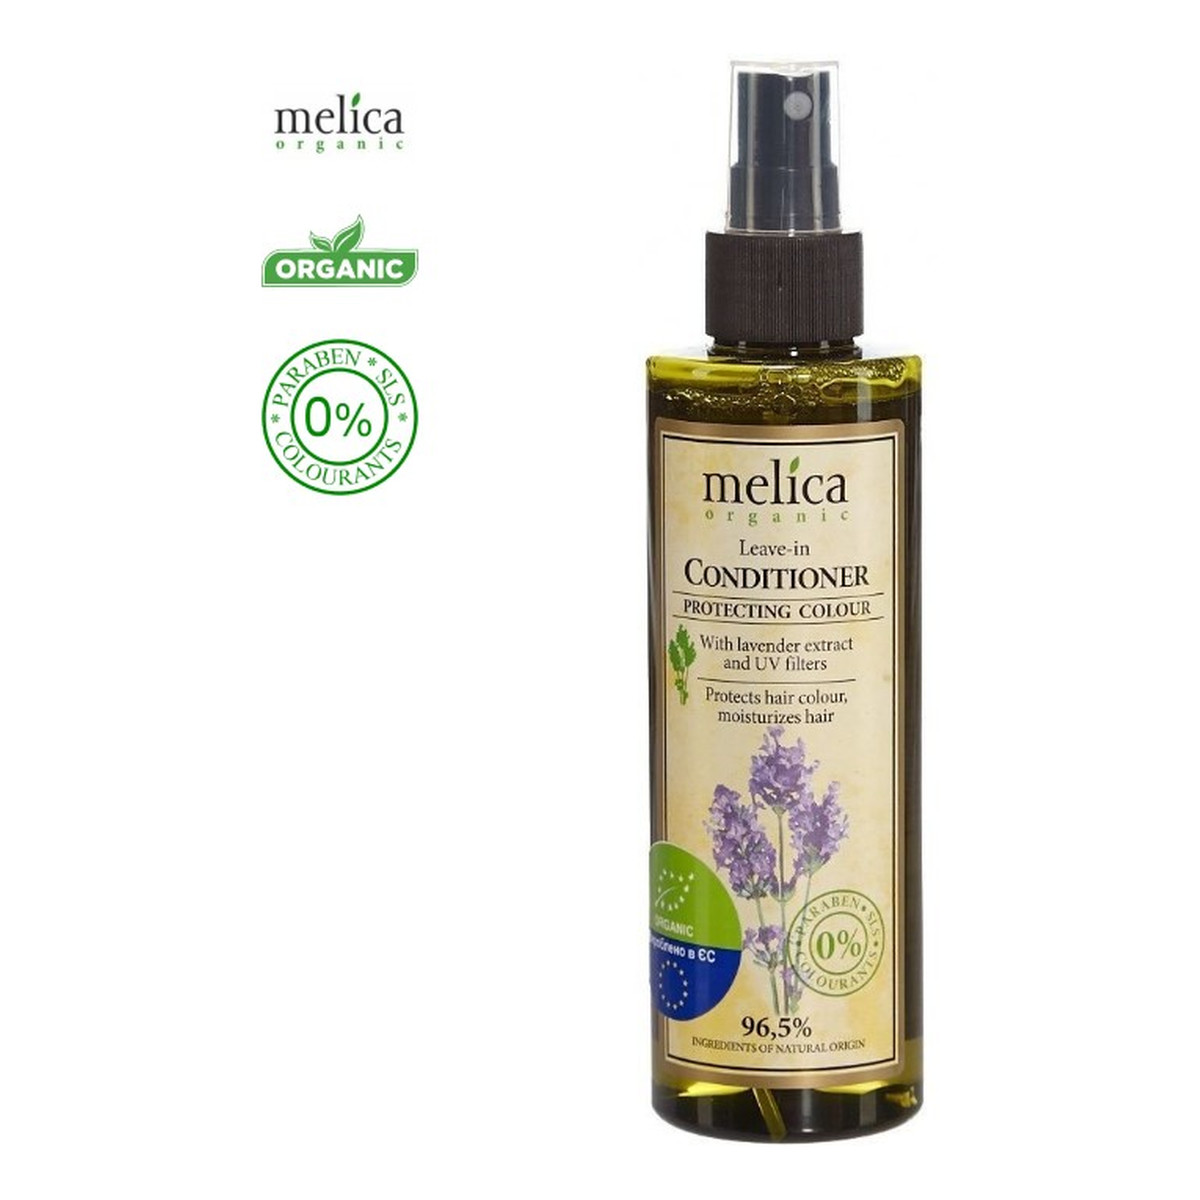 Melica Organic Odżywka organiczna do włosów farbowanych w Sprayu z ekstraktem z lawendy i filtrami UV 200ml